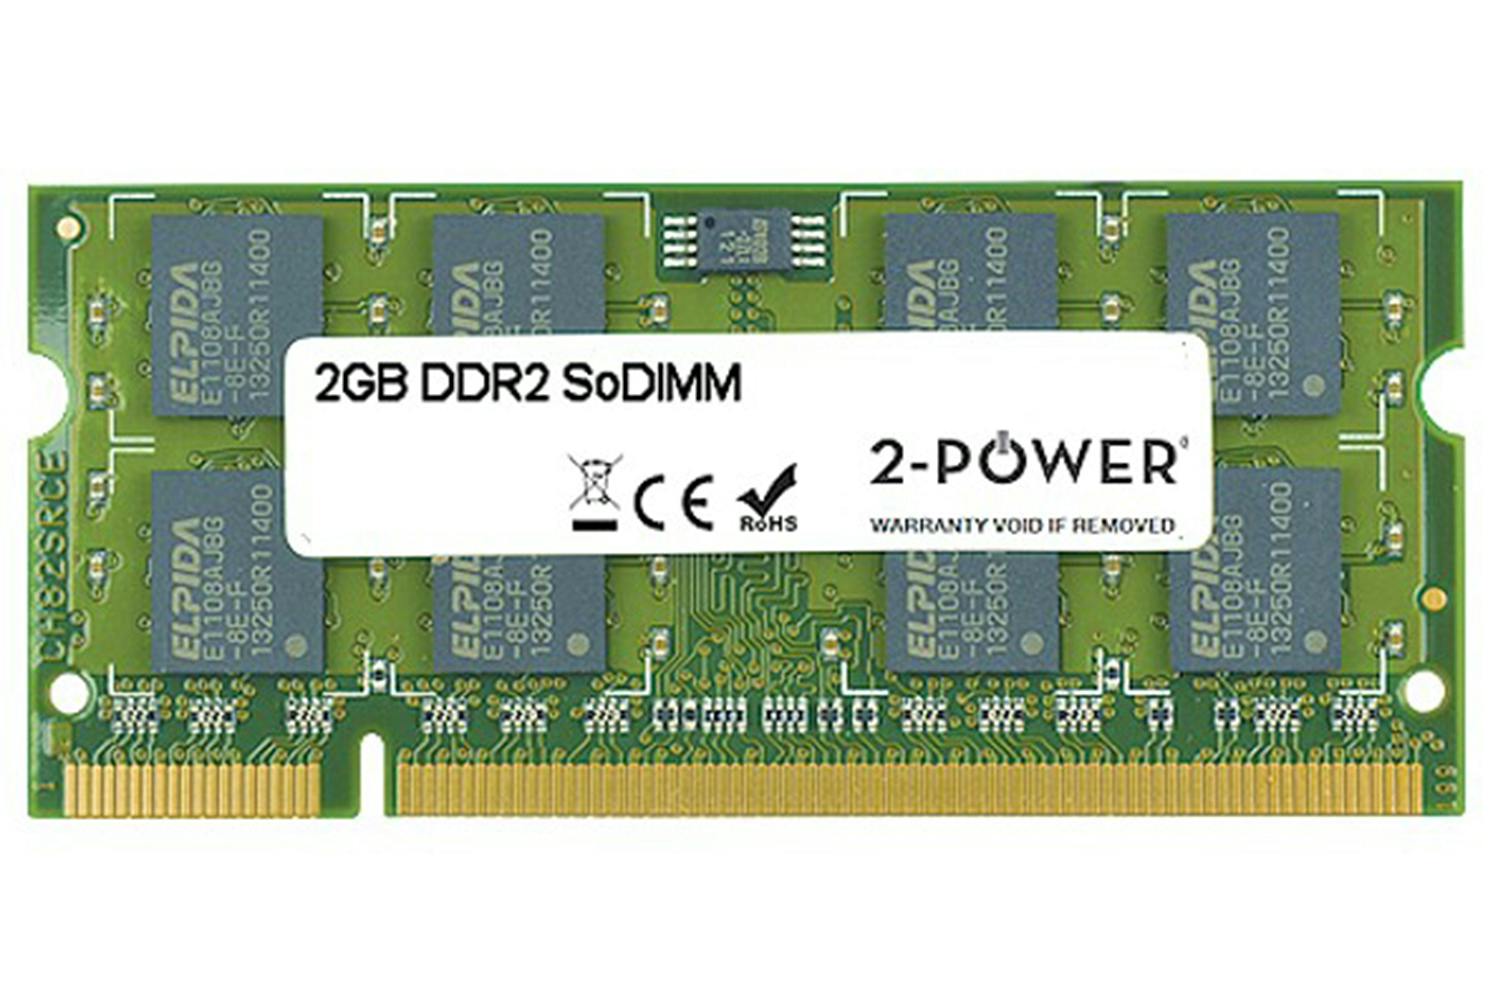 Ddr3 sodimm 4gb купить. SODIMM ddr2 2gb. Ddr2 4 GB SODIMM so. Ddr3 4gb Memory Power. So DIMM ddr3 4gb.